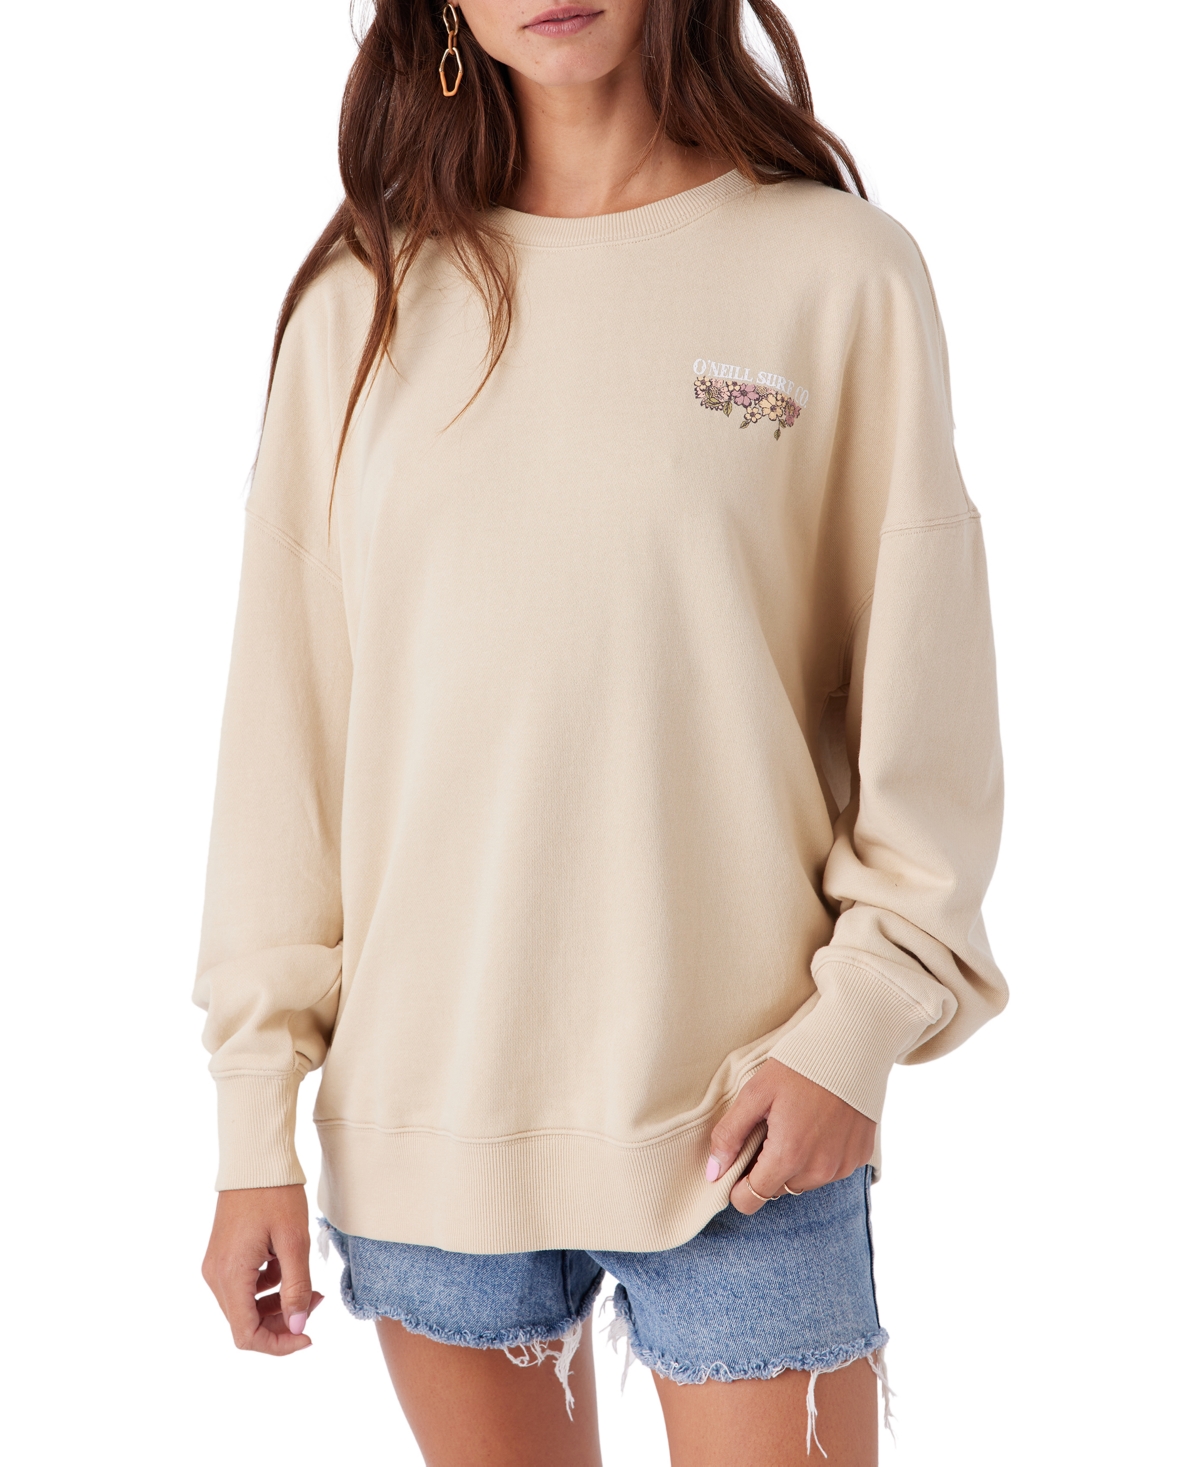 Juniors' Choice Oversized-Fit Graphic Sweatshirt - True Khaki